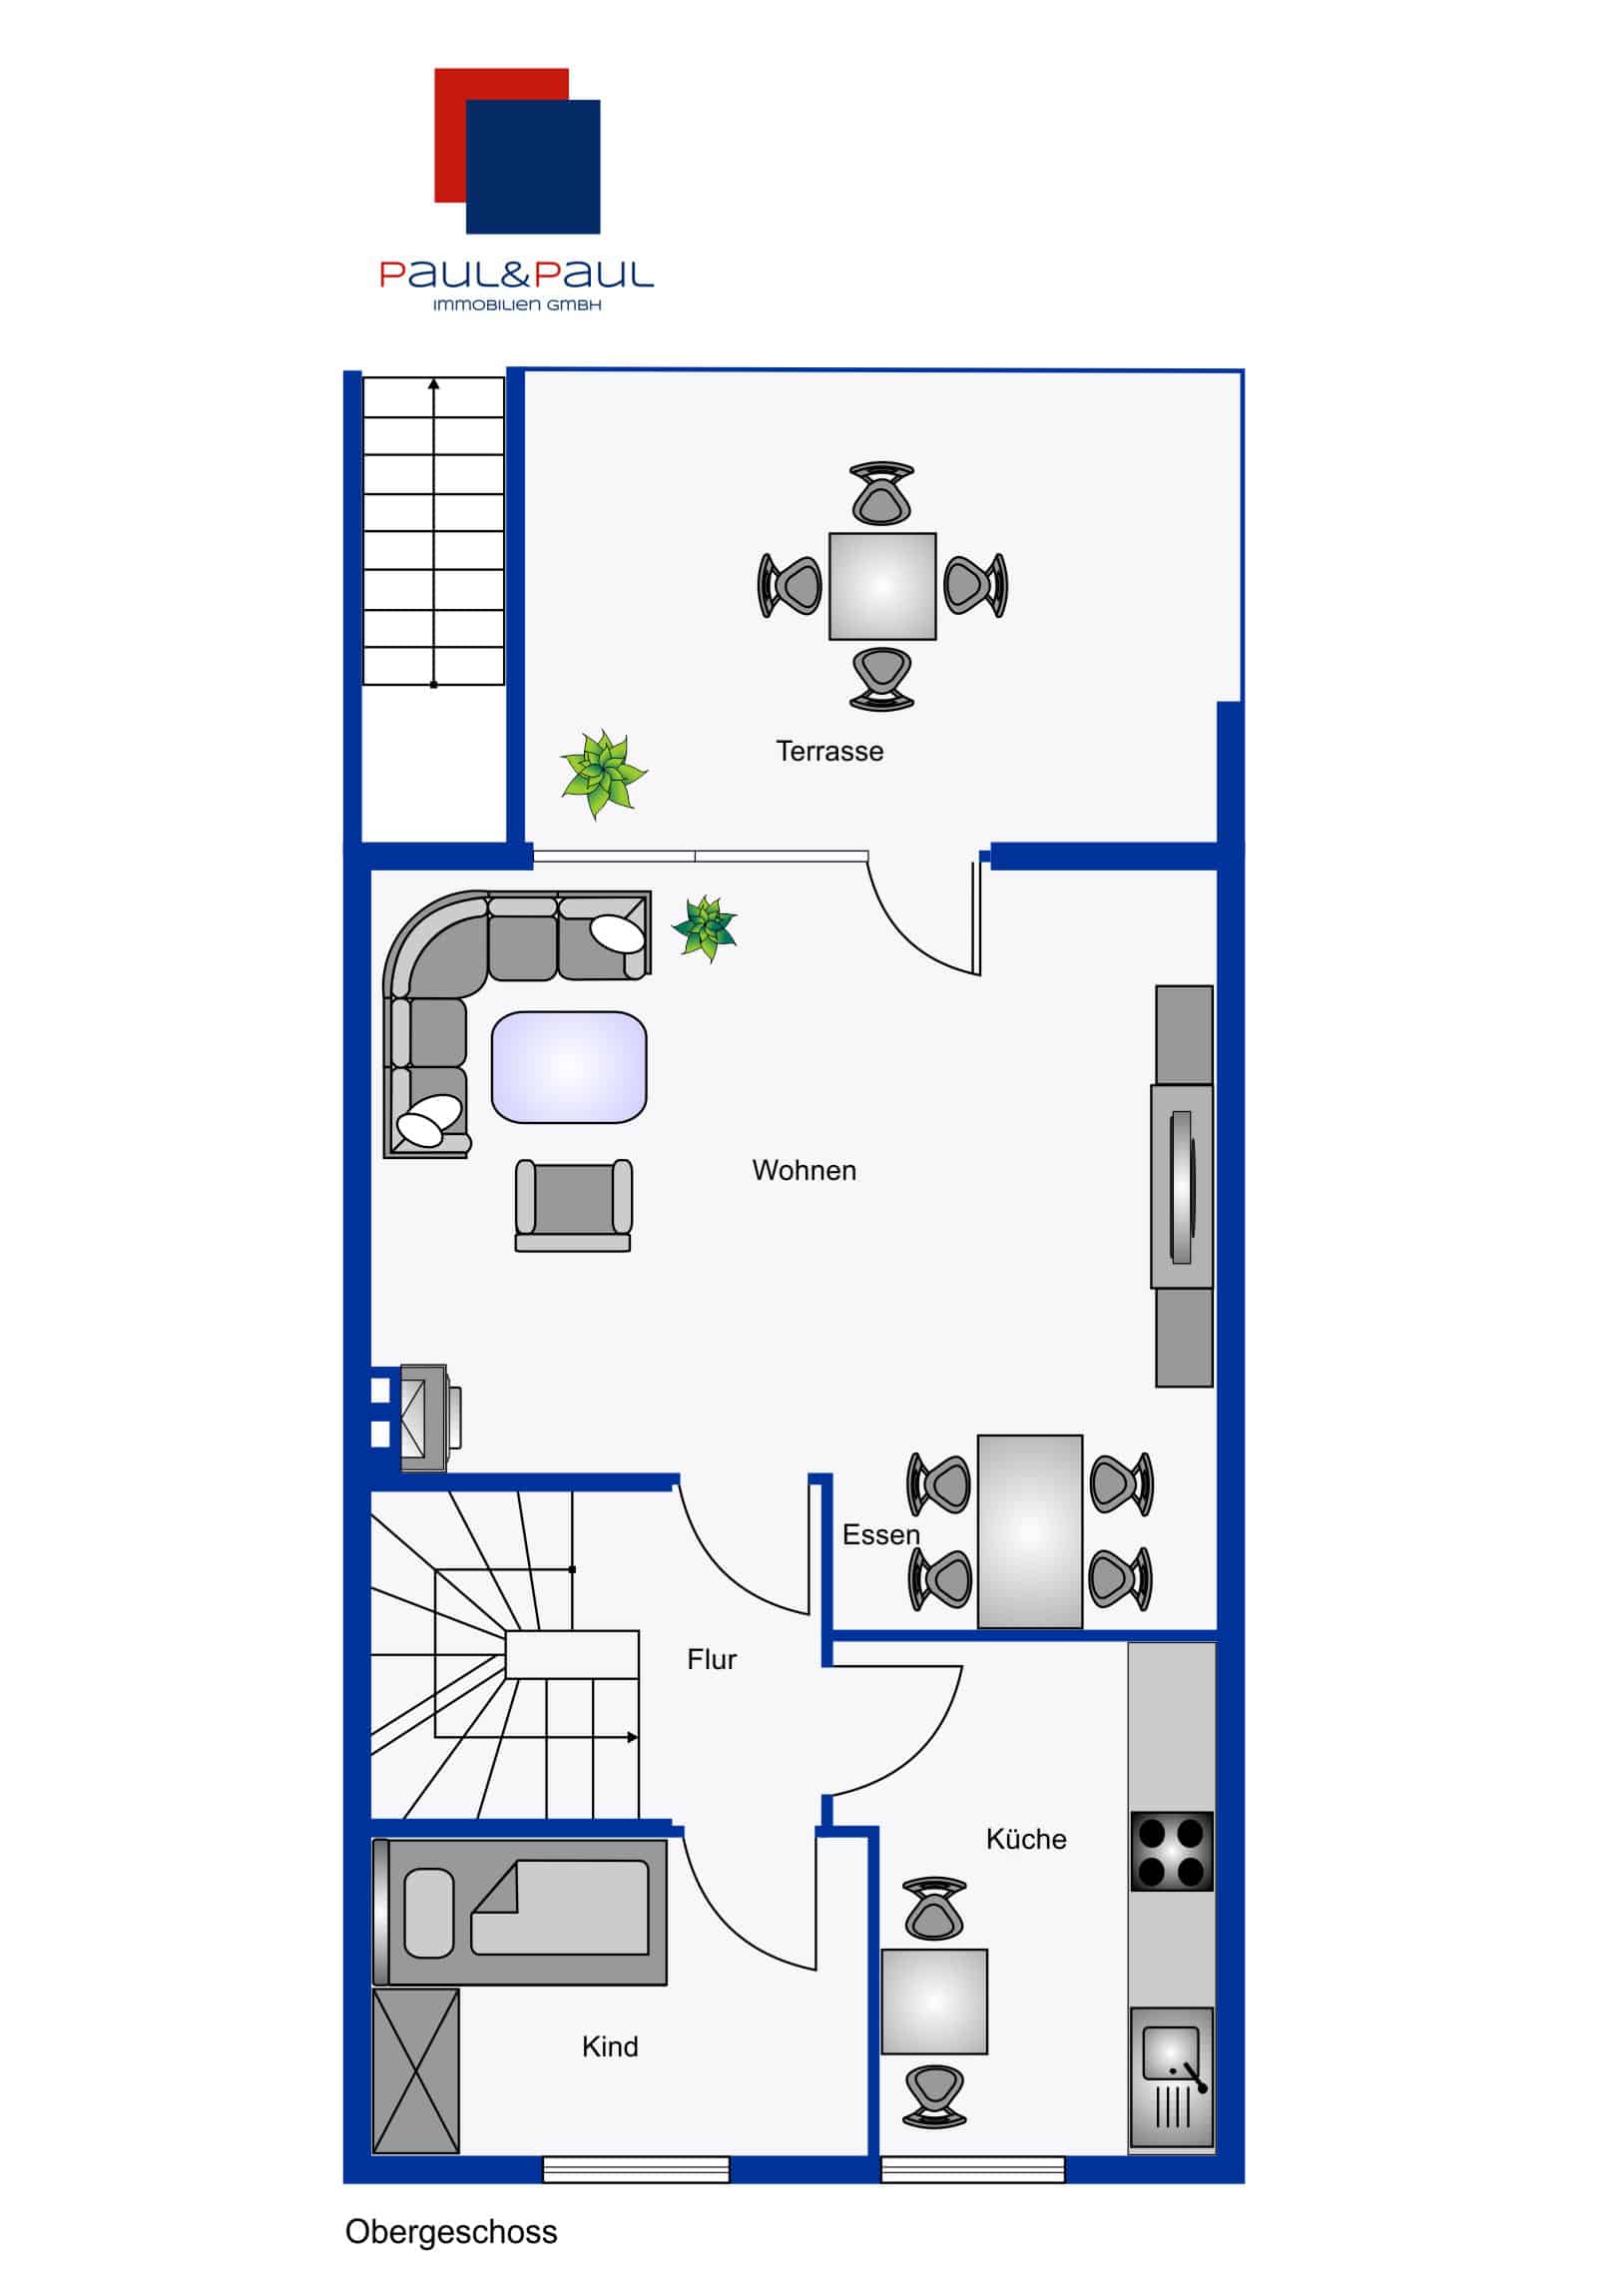 Grundriss Obergeschoss mit Wohnzimmer, Küche, Arbeits-/Kinderzimmer und Terrasse